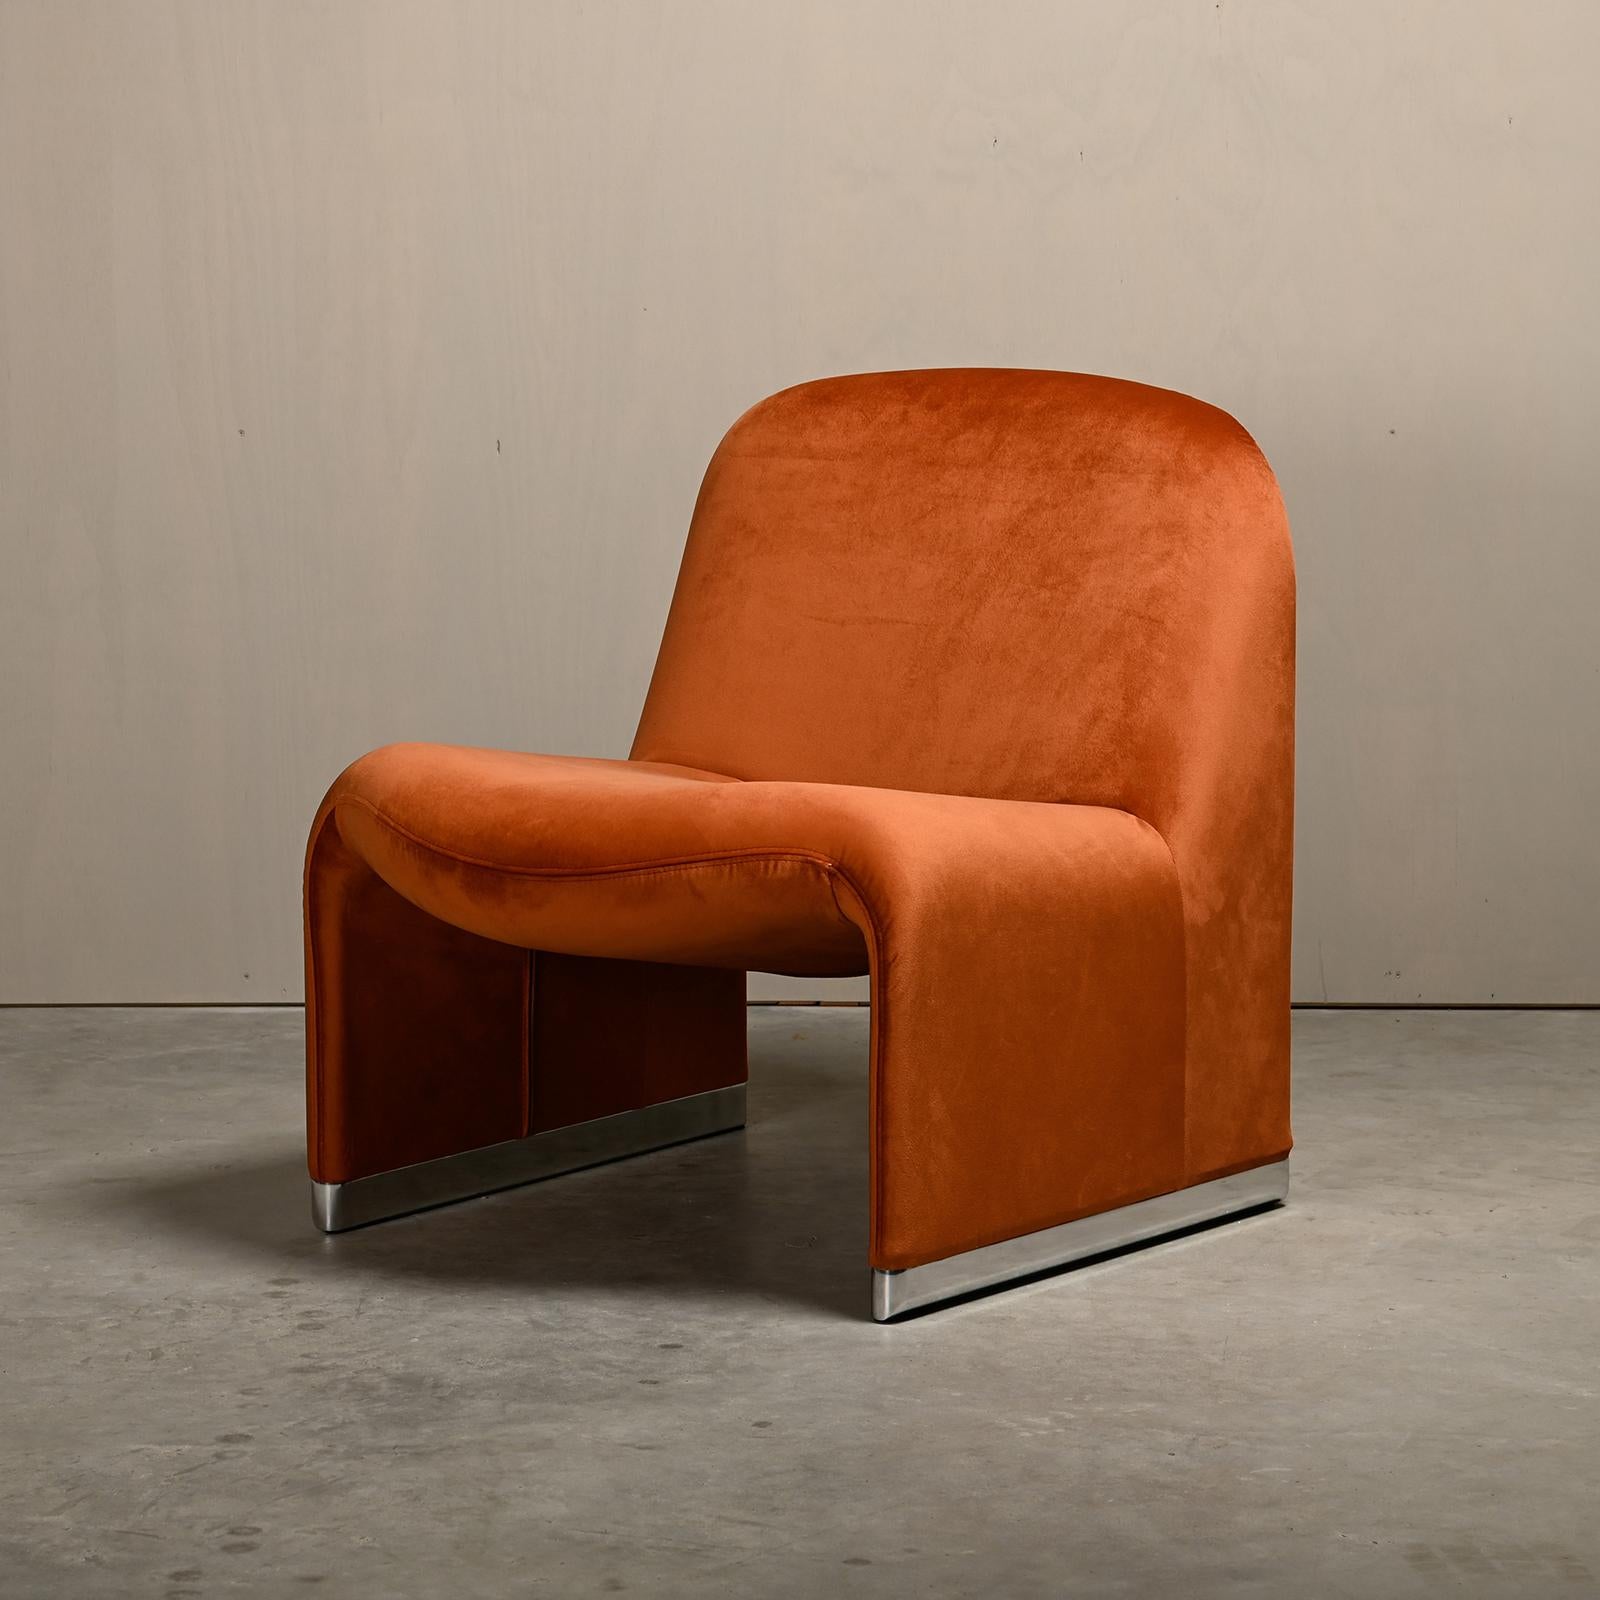 Chaise longue iconique Alky conçue par Giancarlo Piretti dans les années 60 pour Anonima Castelli, Italie. La forme de la chaise est construite avec de la mousse imprimée directement sur un cadre métallique avec des bandes élastiques, pour assurer